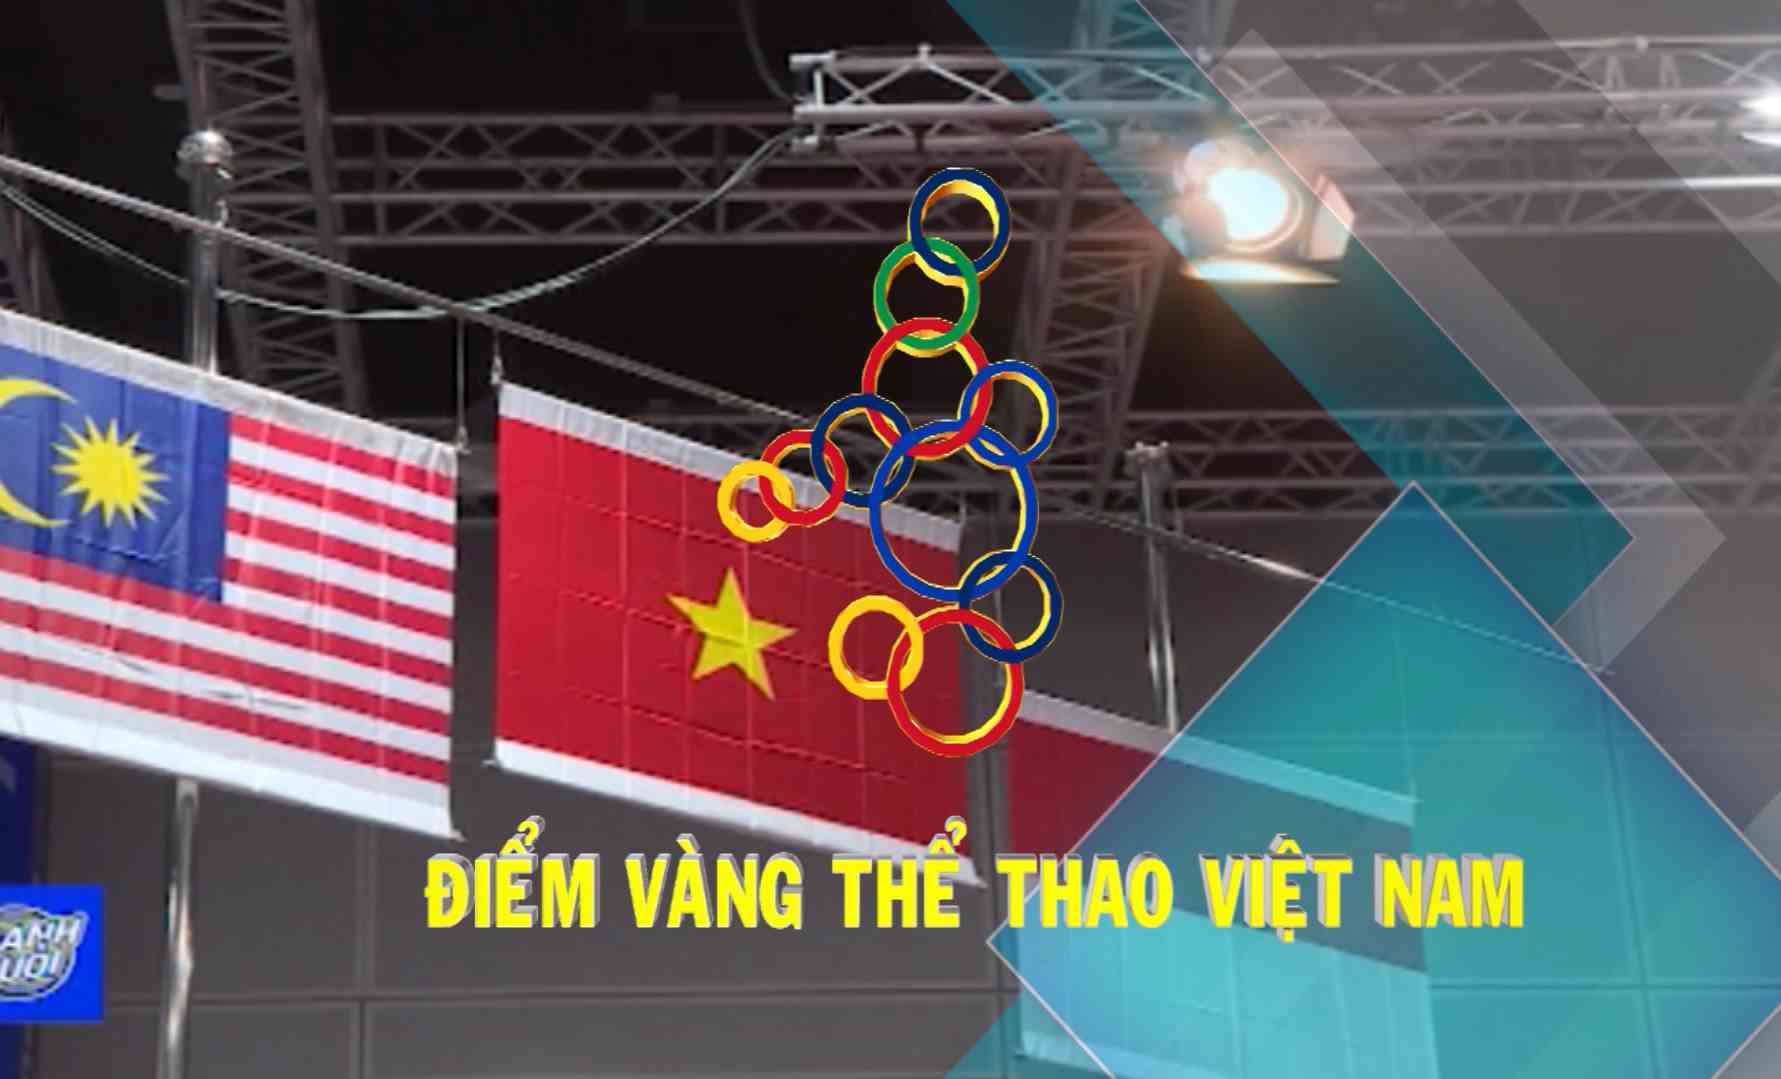 [Video] Điểm vàng thể thao Việt Nam (08-12-2019)